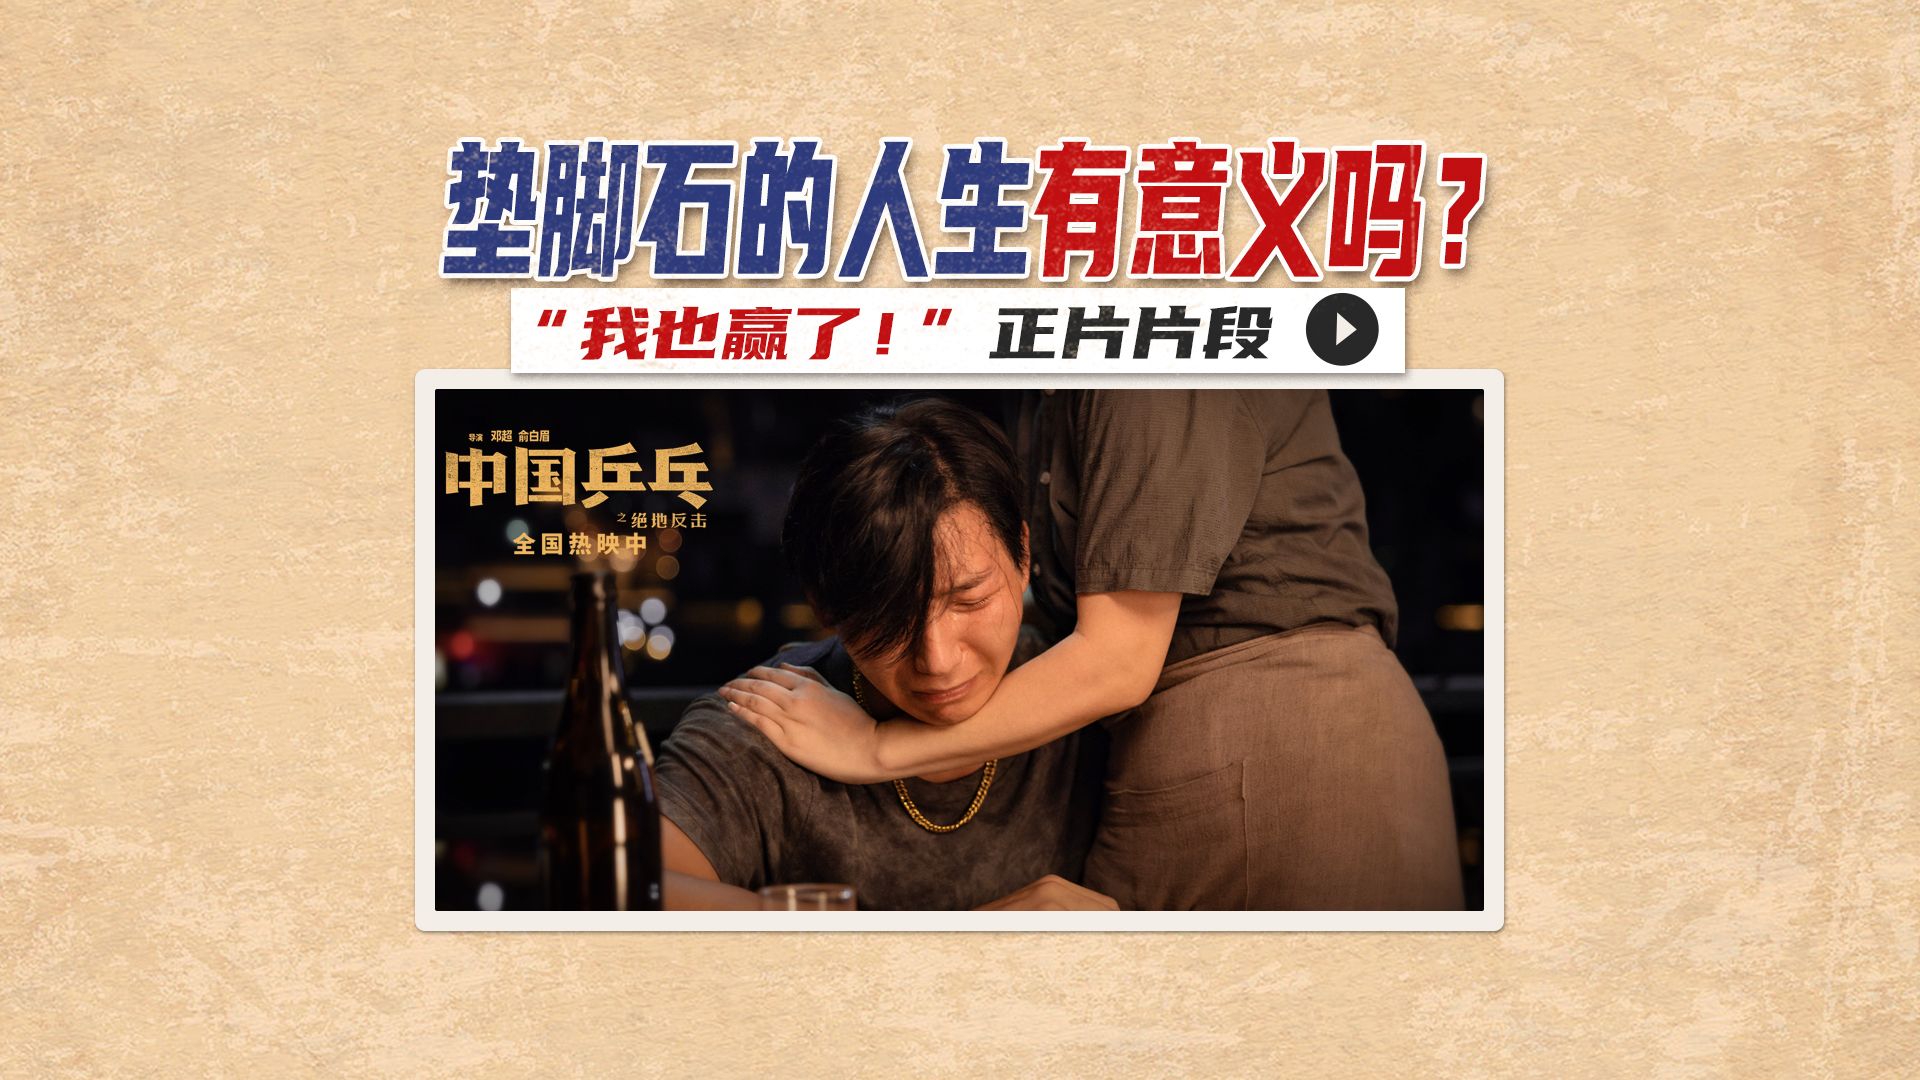 电影《中国乒乓》释放“最辛酸”片段 唯一虚构人物赚取最多眼泪